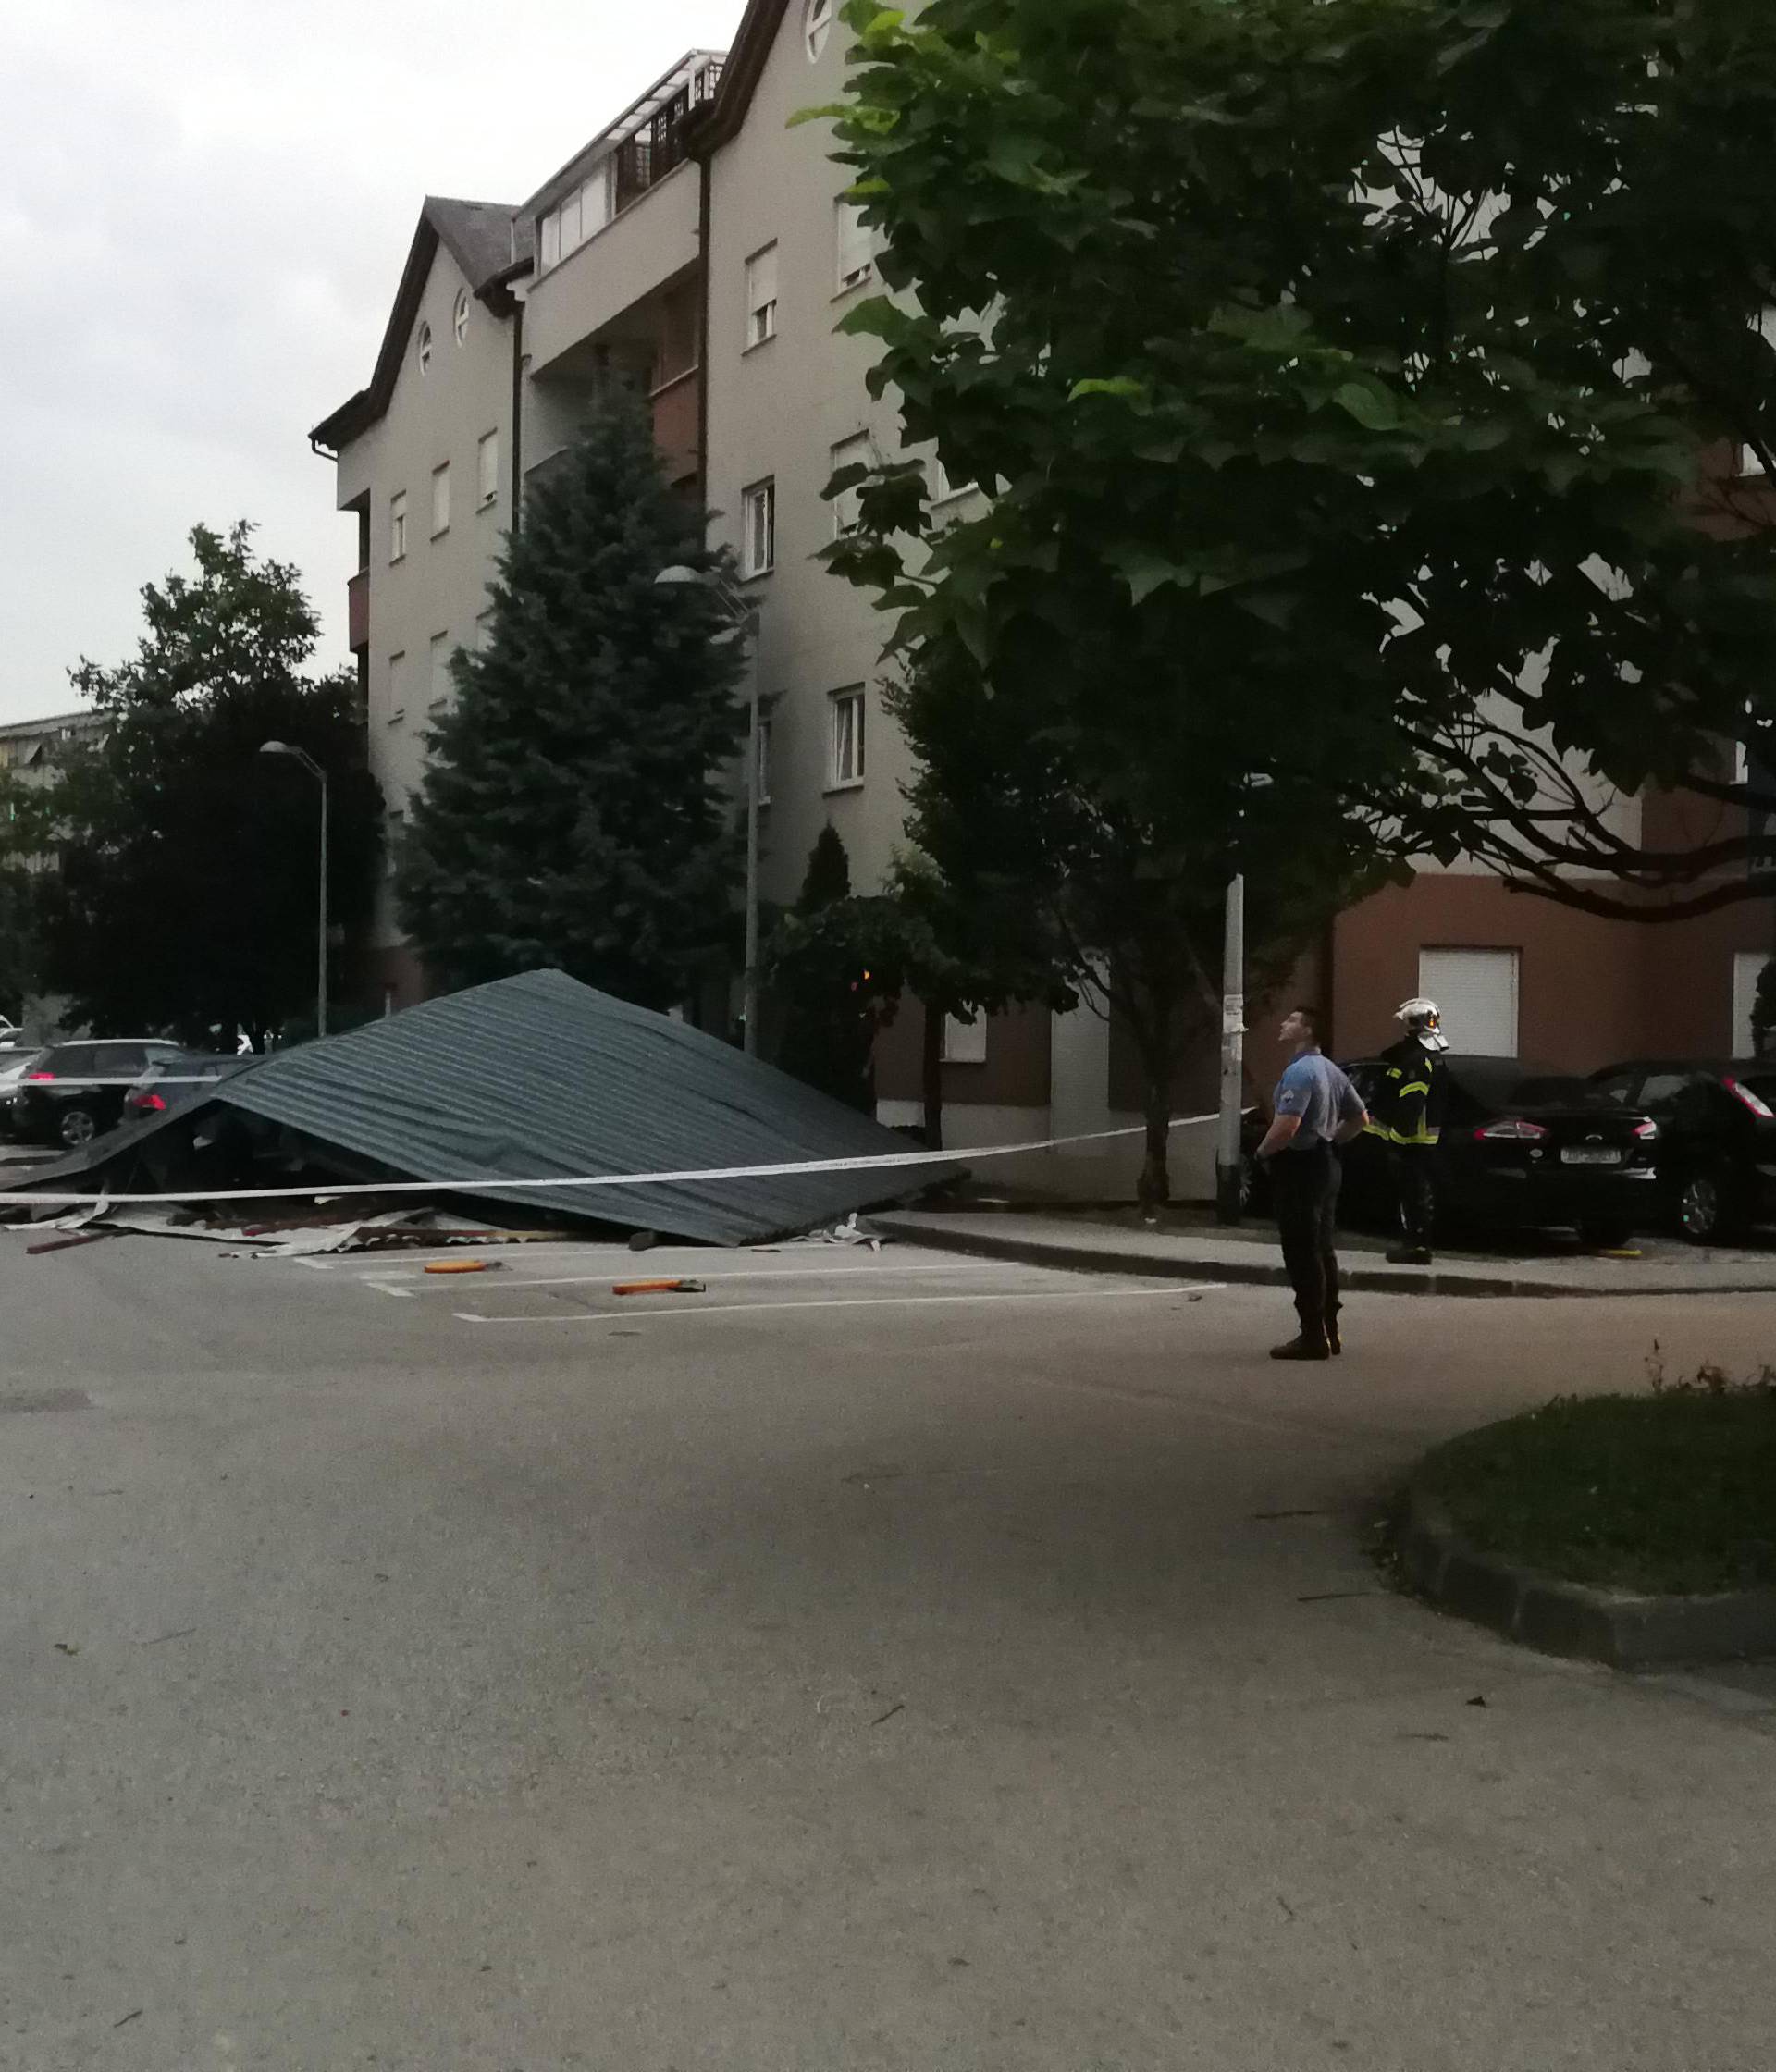 Tuča u Samoboru, jak vjetar u Zagrebu odnio krov sa zgrade